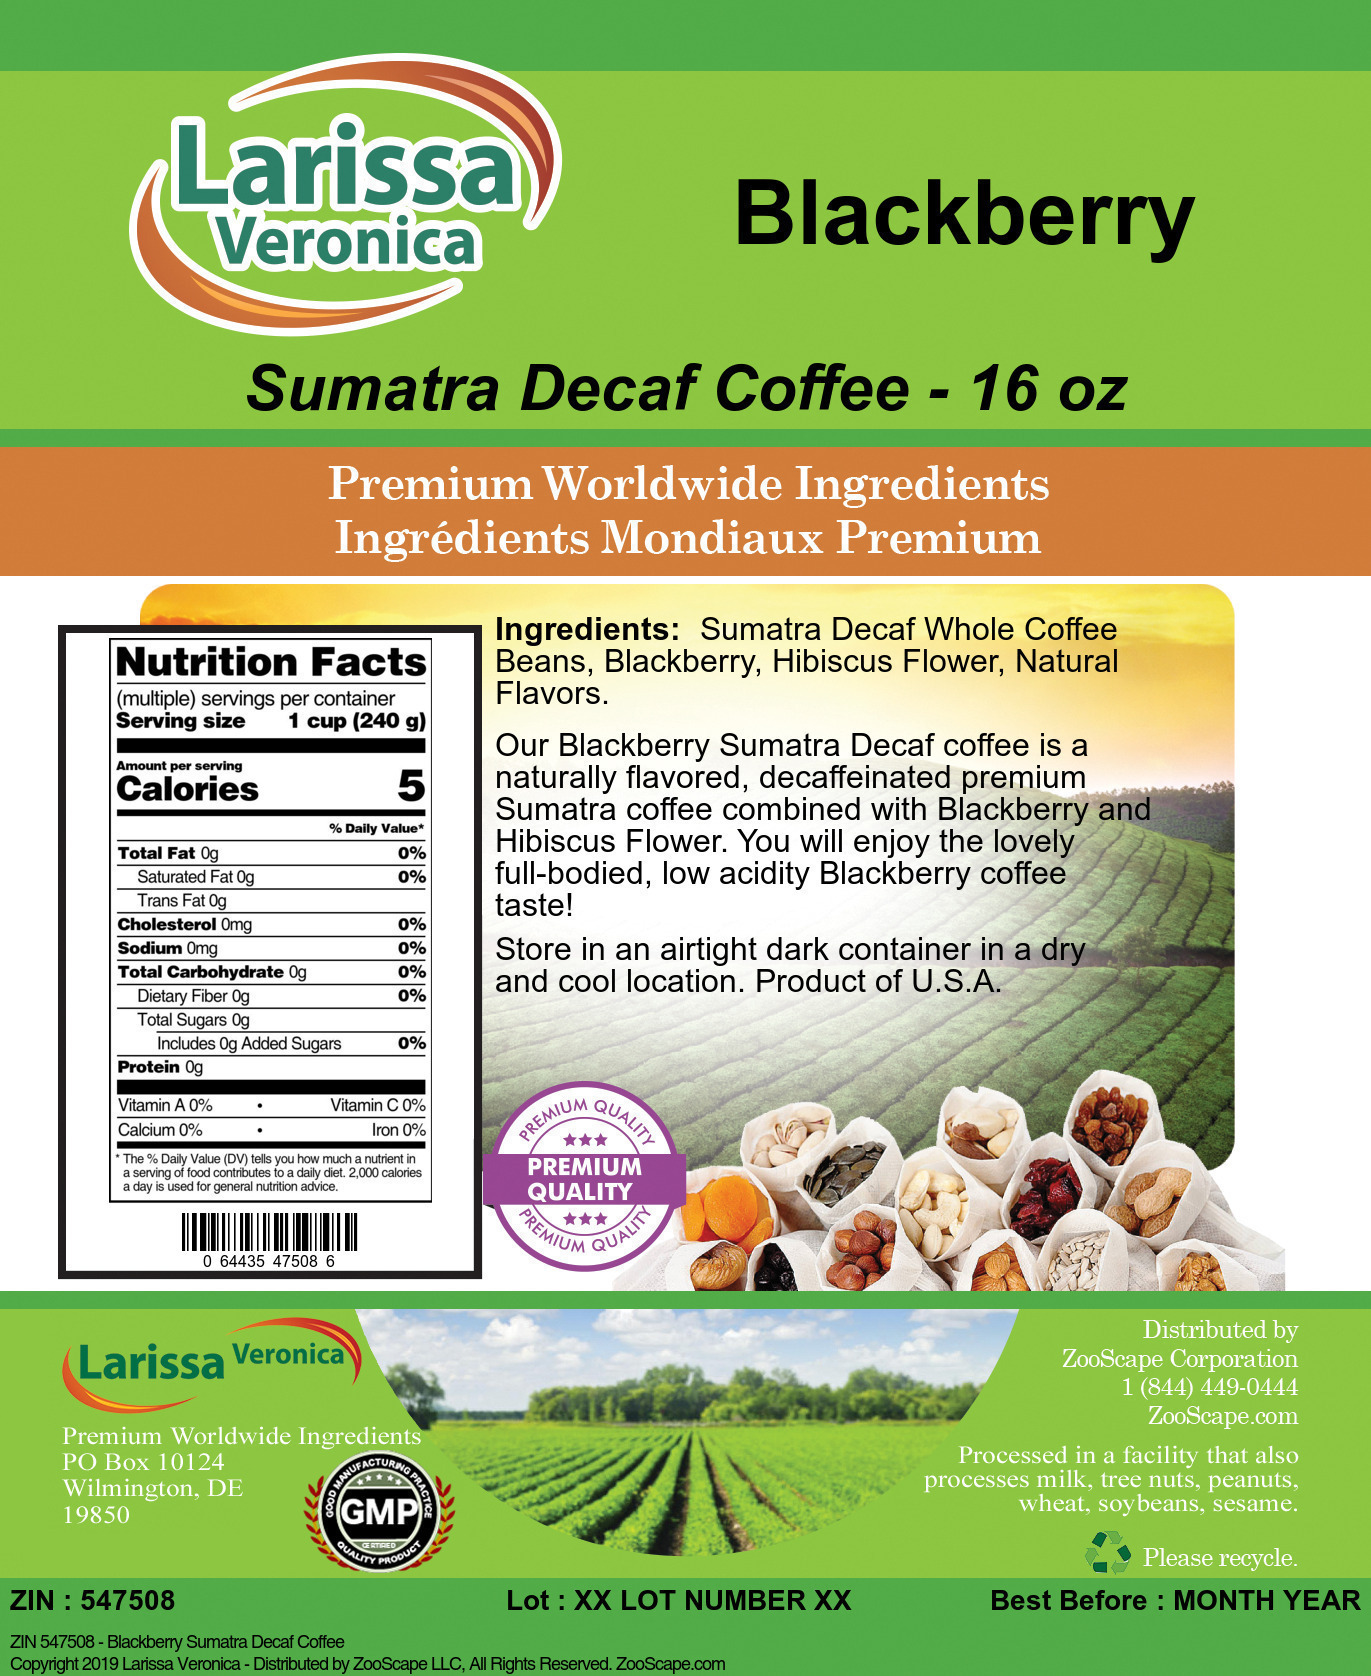 Blackberry Sumatra Decaf Coffee - Label